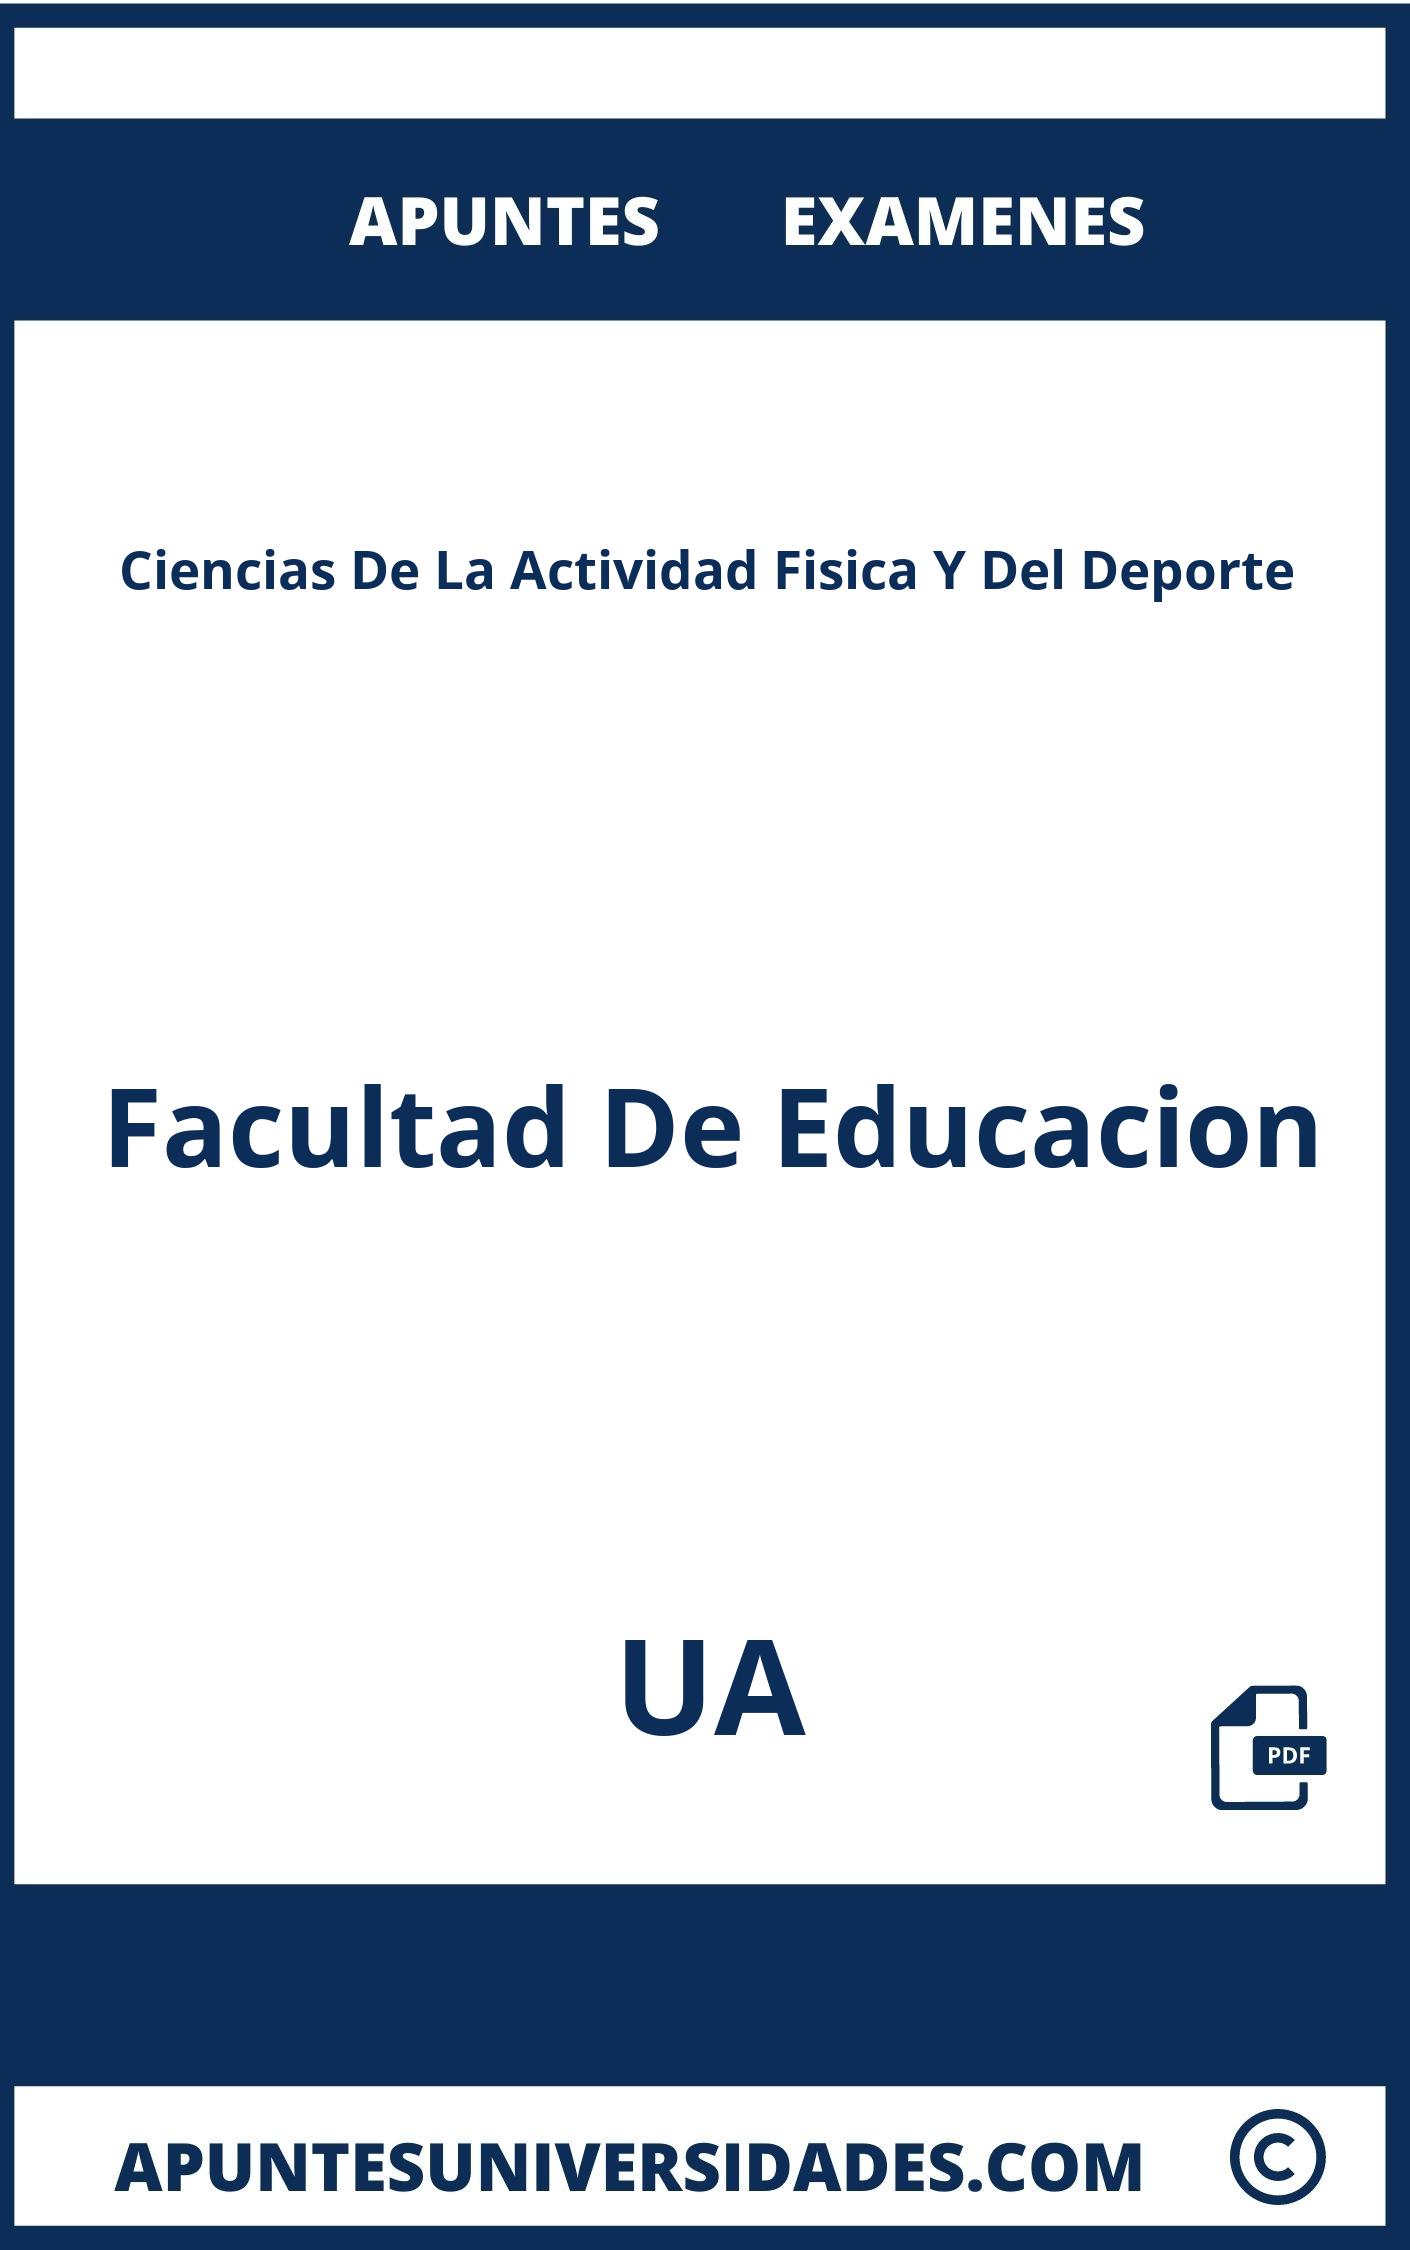 Apuntes Examenes Ciencias De La Actividad Fisica Y Del Deporte UA